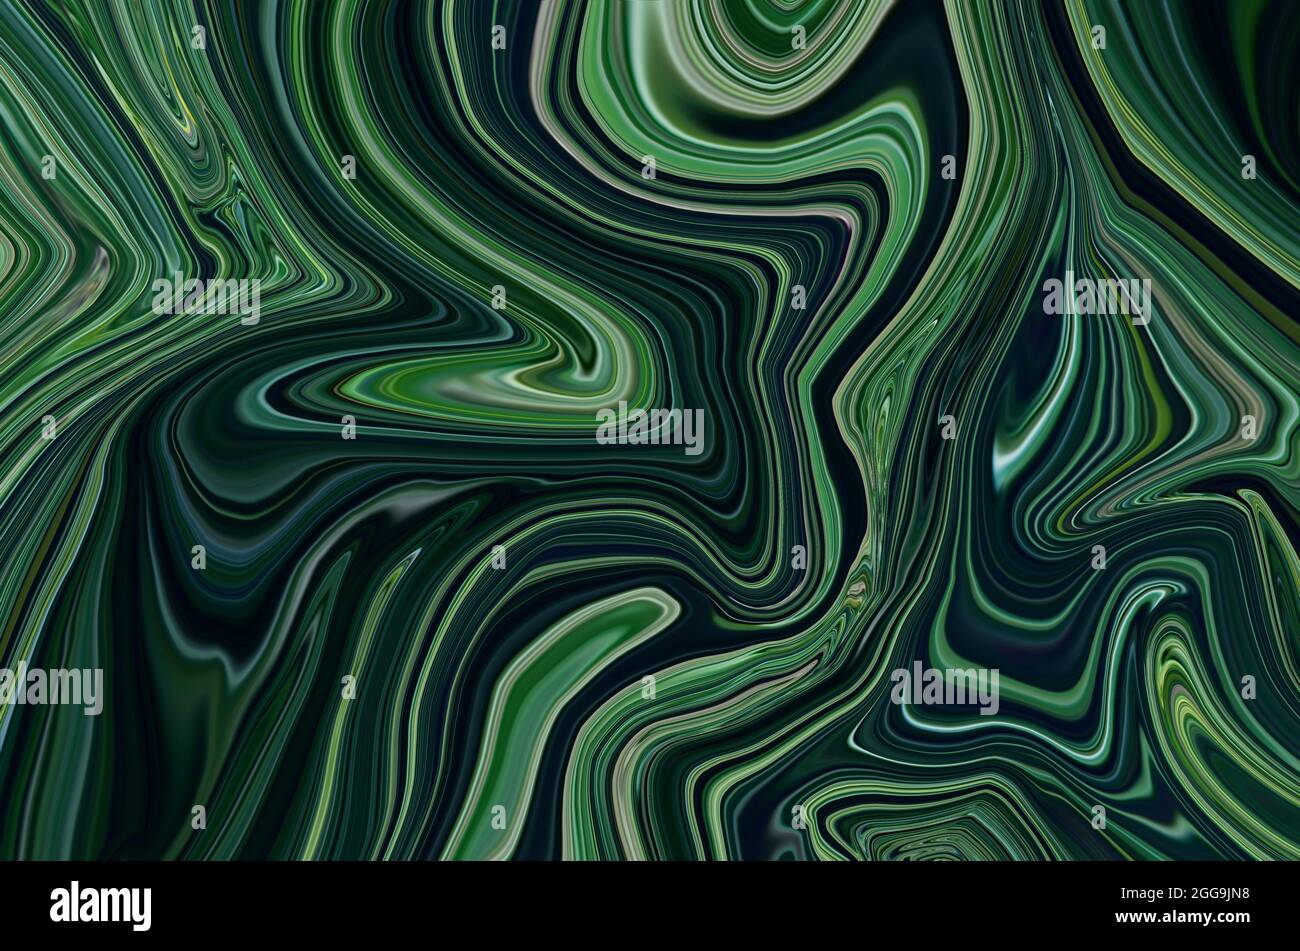 Vert foncé marbre liquide psychédélique fluide art abstrait conception de fond. Style élégant et tendance en marbre liquide. Idéal pour le Web, la publicité, les tirages. Banque D'Images